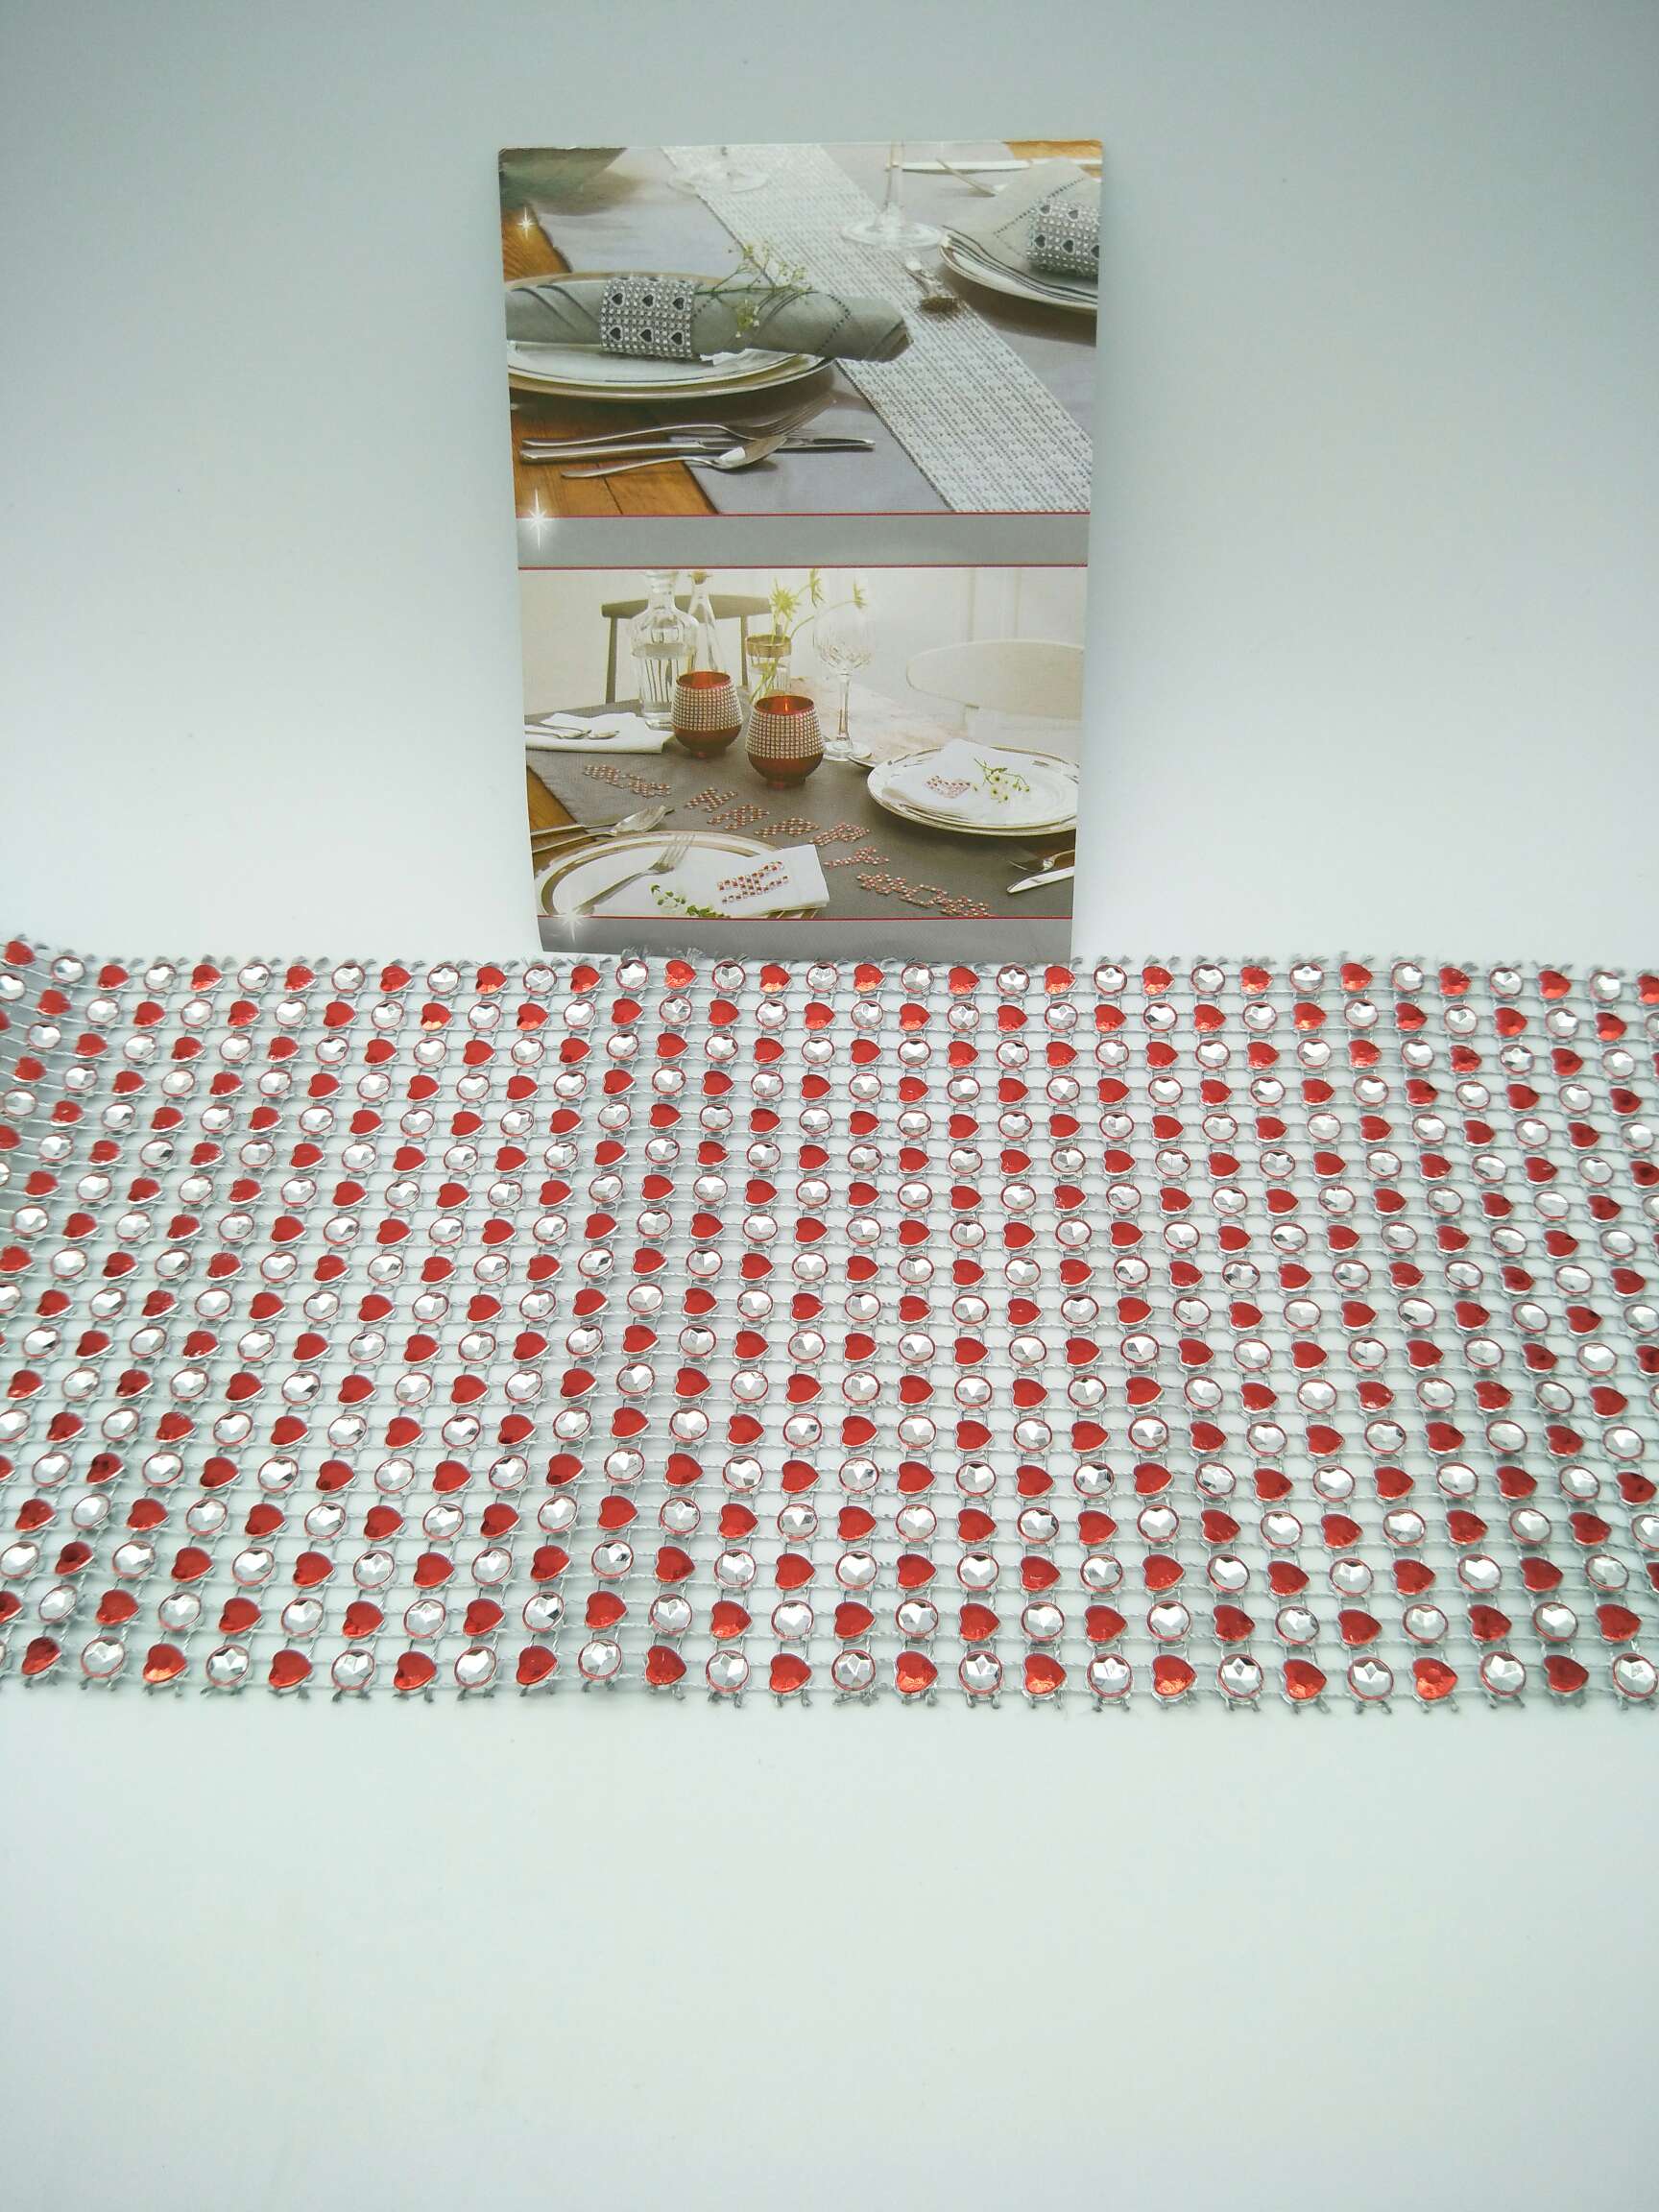 18排小桃心×1m排钻入opp袋包装
红色细节图